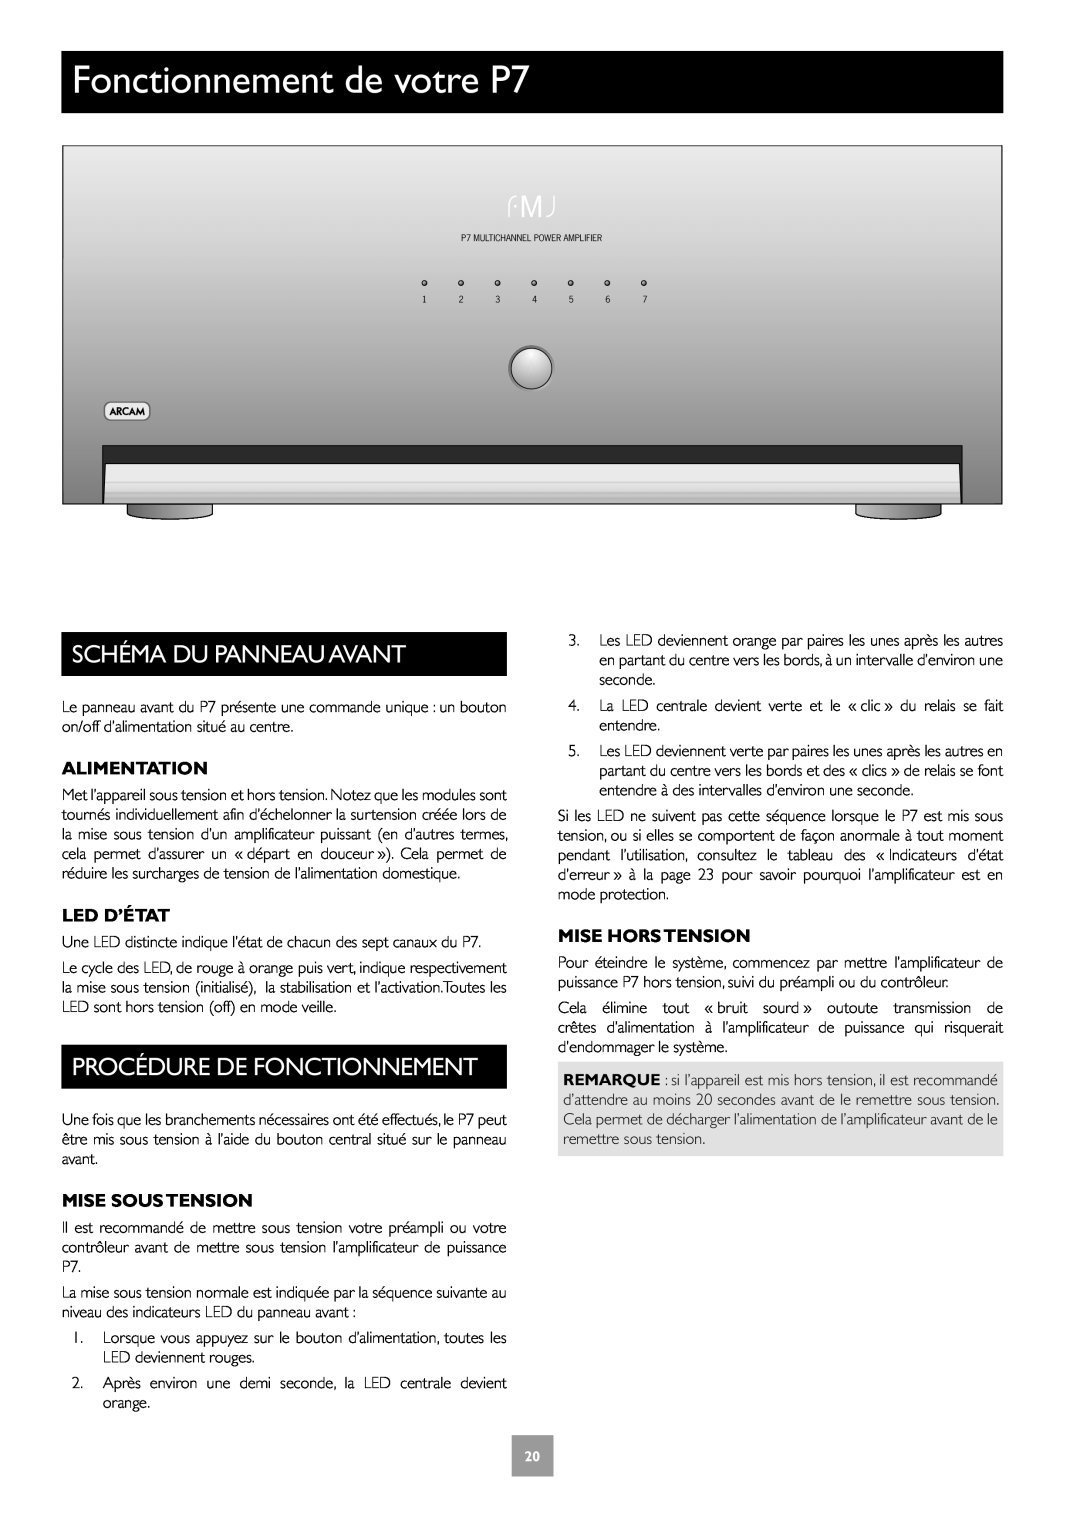 Arcam Multichannel Power Amplifier manual Fonctionnement de votre P7, Schéma Du Panneau Avant, Procédure De Fonctionnement 